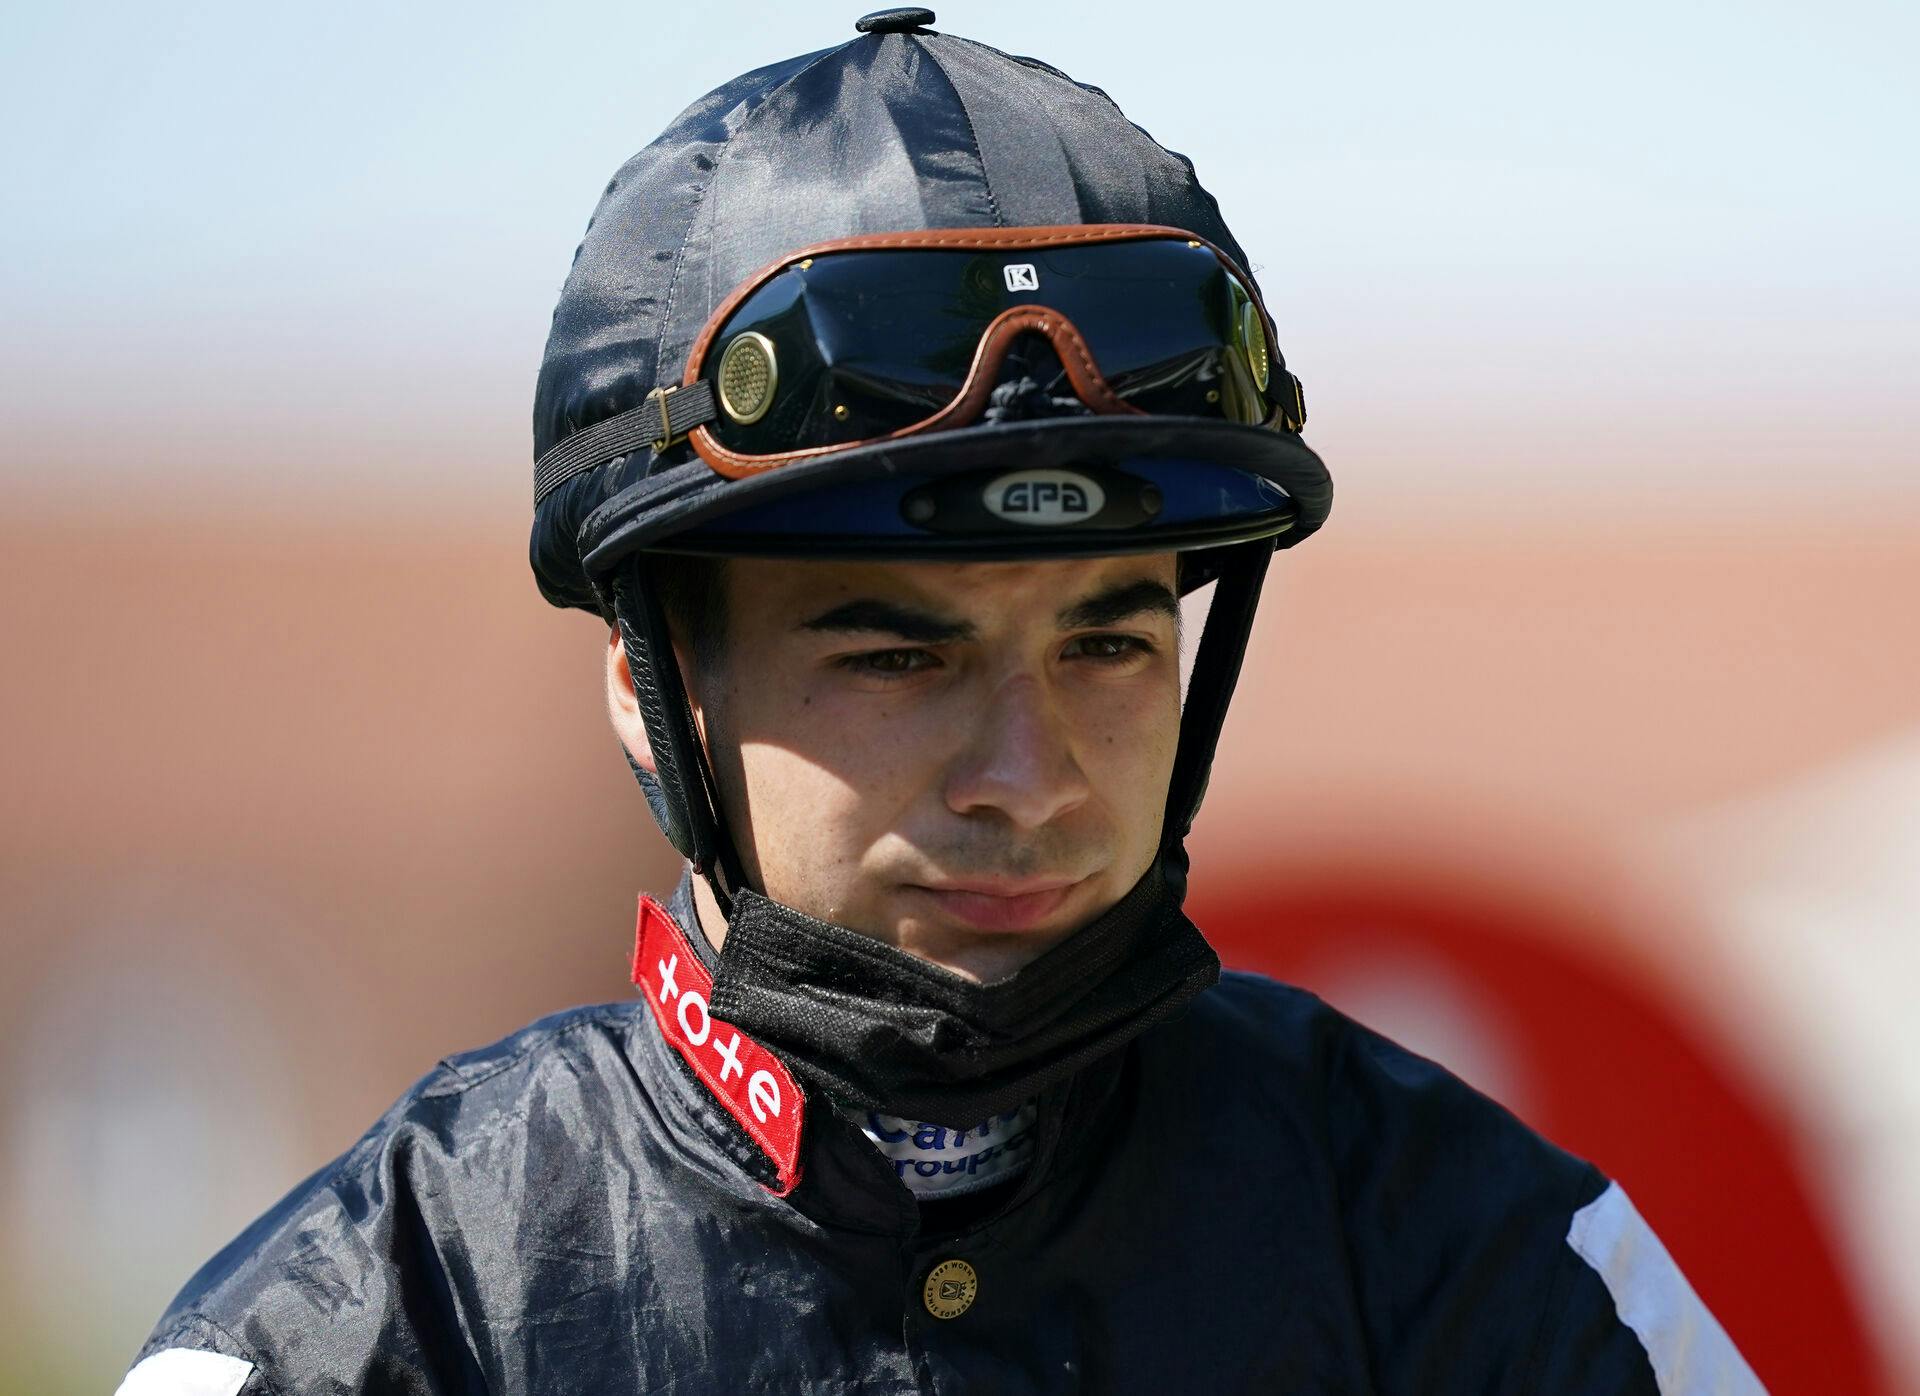 Den 23-årige italienske jockey Stefano Cherchi er død to uger efter, han var involveret i en ulykke under et løb i Canberra i Australien.